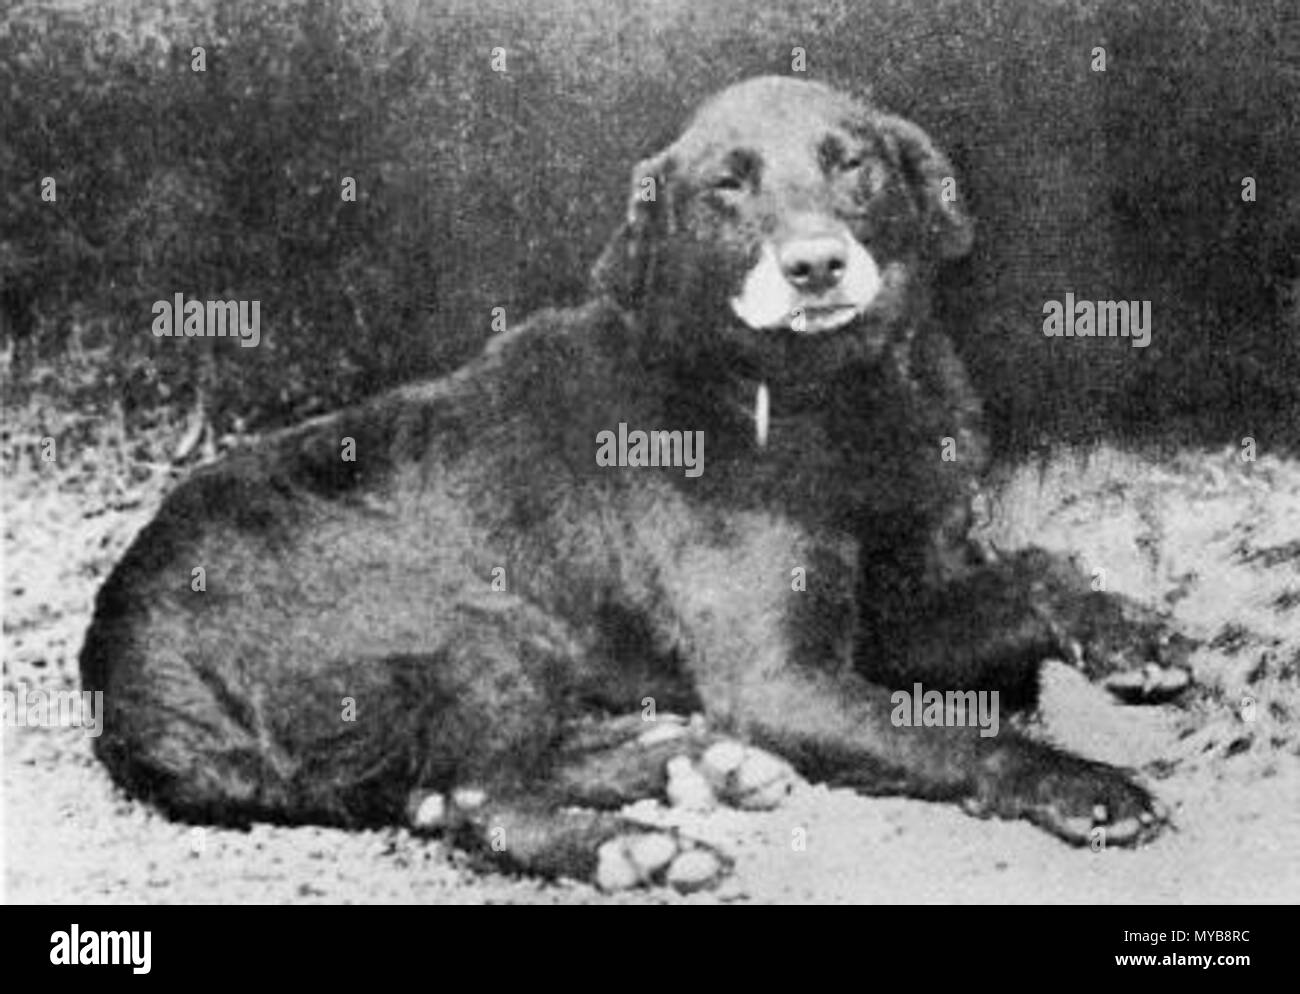 . Buccleuch Avon (b. 1885), als der Urahn aller modernen Labrador Retriever. Datum unbekannt 1890 - 1895. Siehe oben/unten 89 Buccleuch Avon (1885) Stockfoto